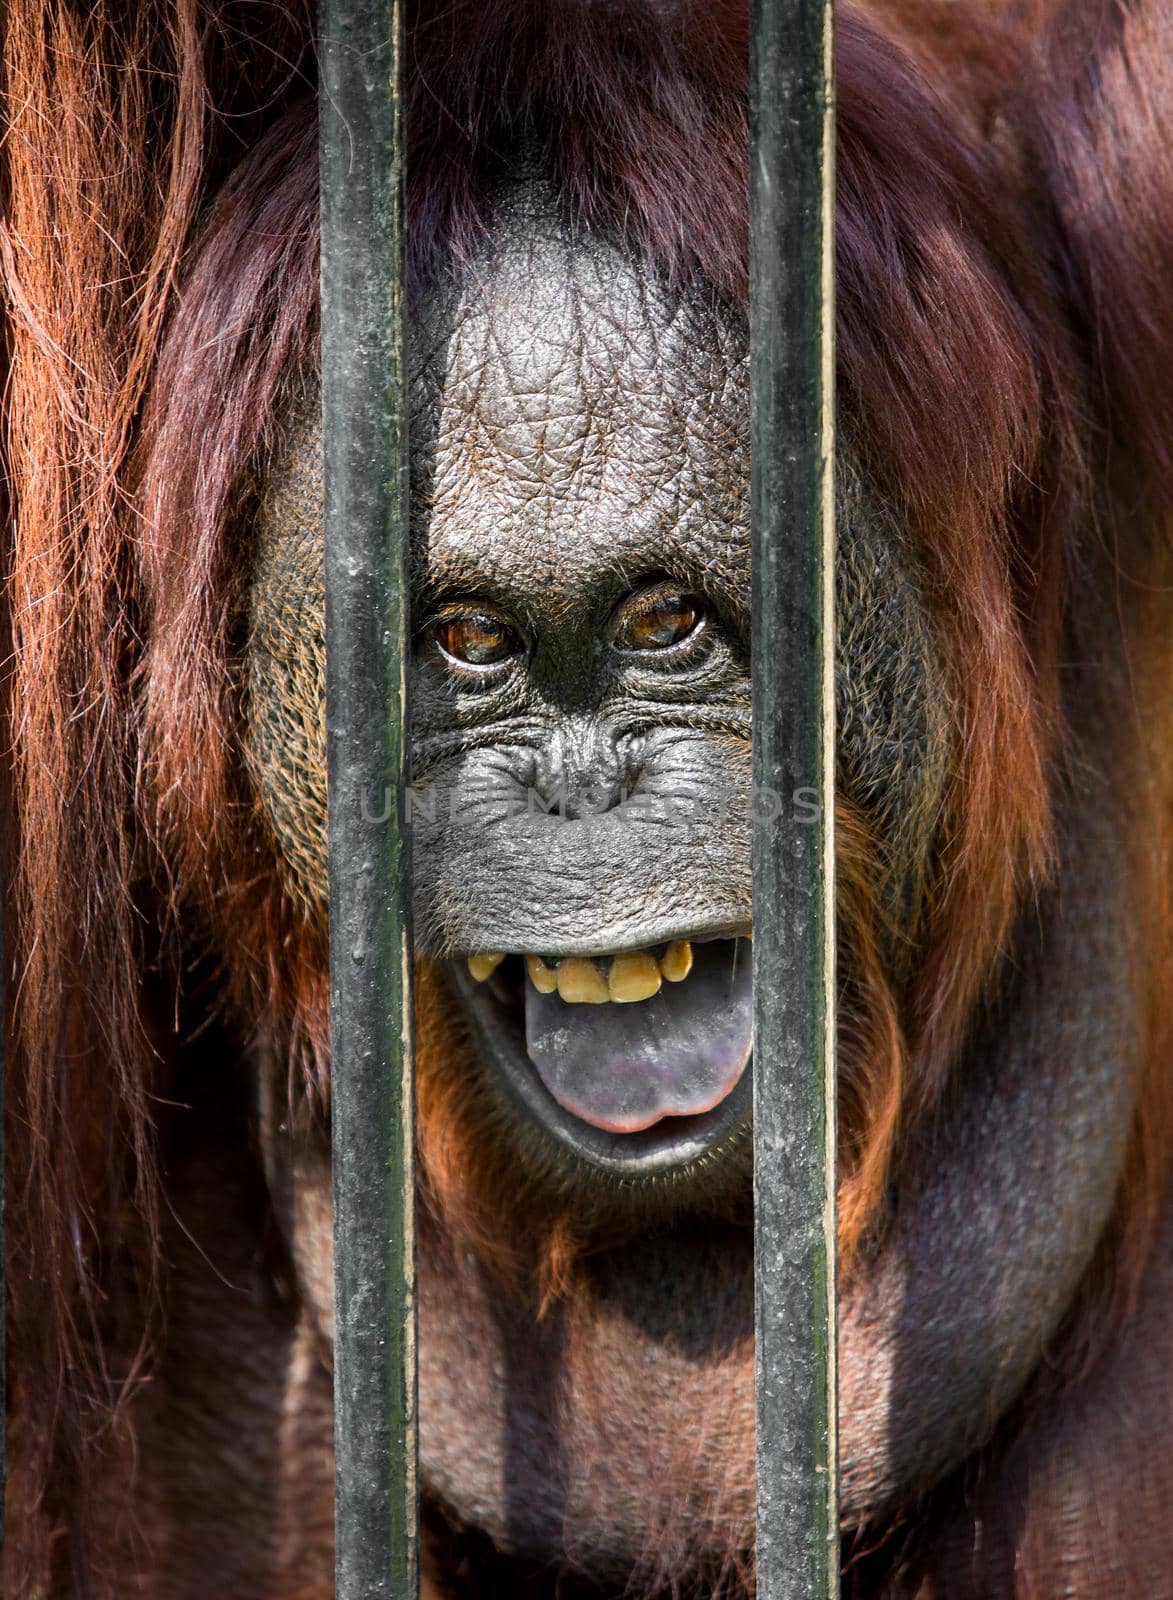 Orangutan in the cage